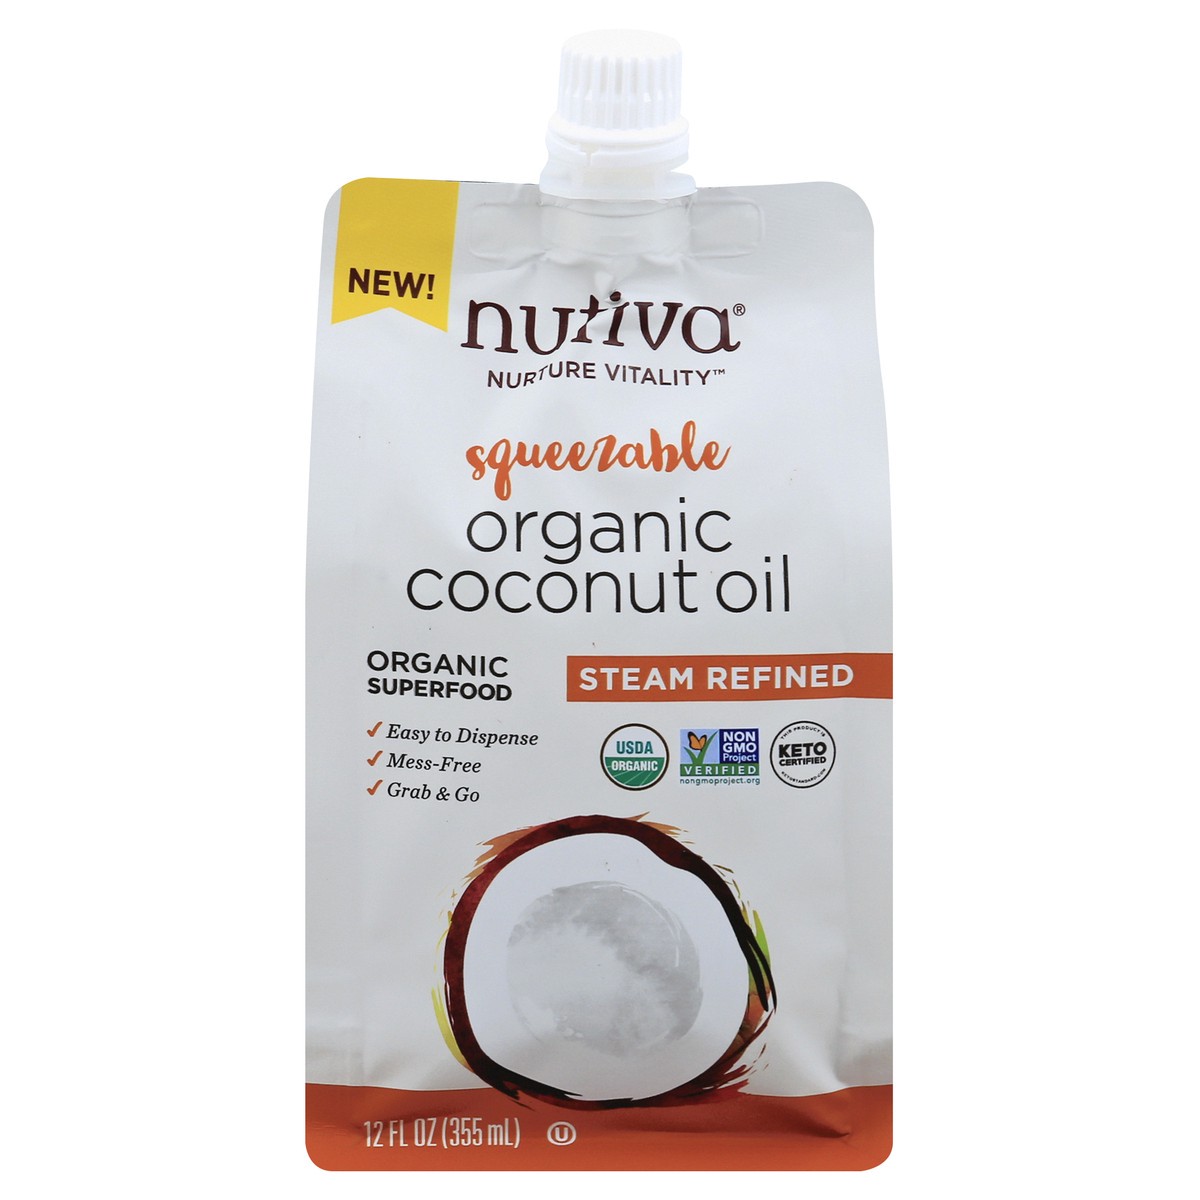 slide 1 of 9, Nutiva Nurture Vitality Organic Steam Refined Squeezable Coconut Oil 12 oz, 12 oz